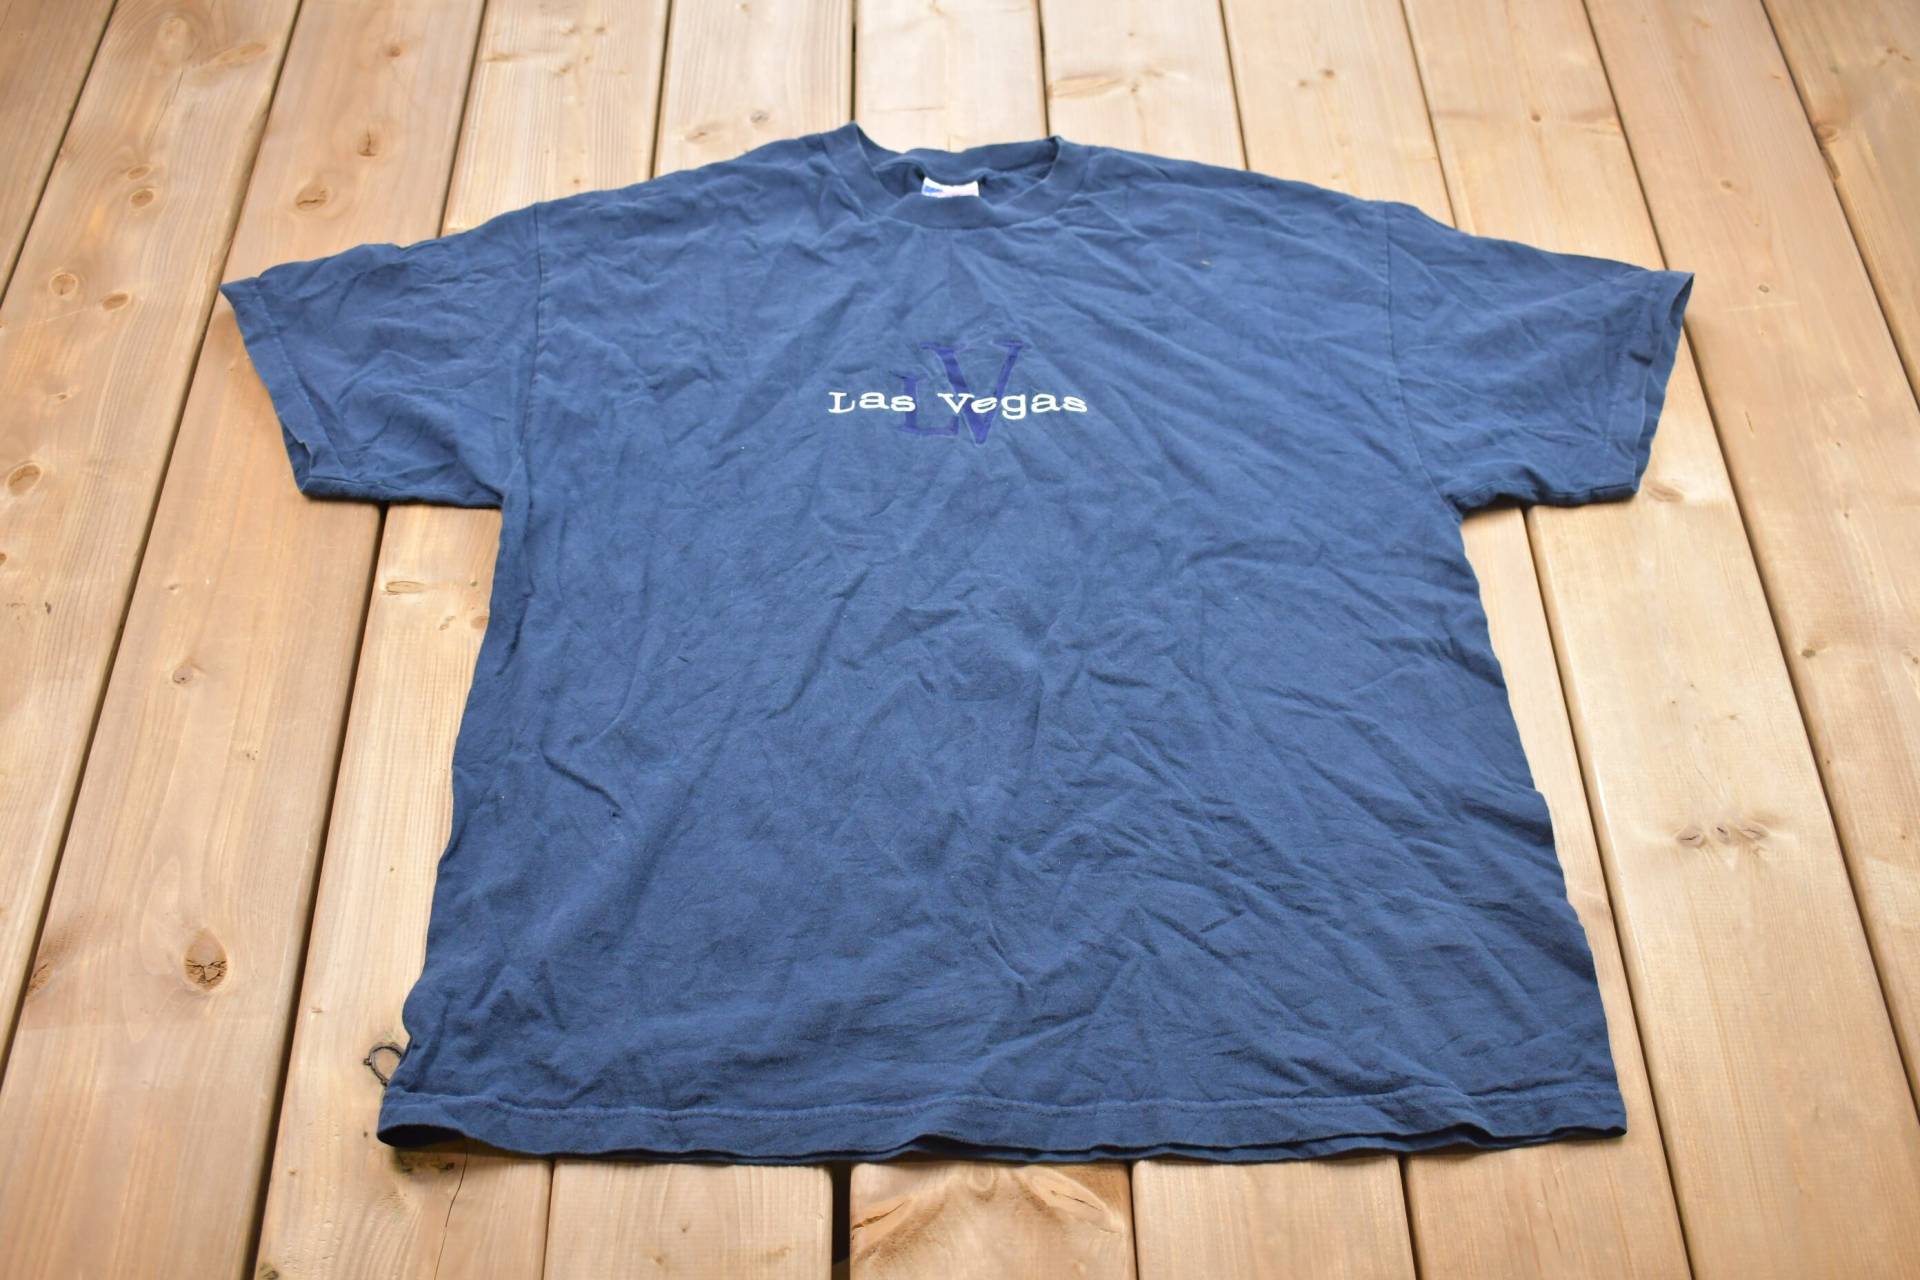 Vintage 1990S Las Vegas T-Shirt/Souvenir T Shirt Streetwear Made in Usa Urlaubs The Strip Reisen & Tourismus von Lostboysvintage